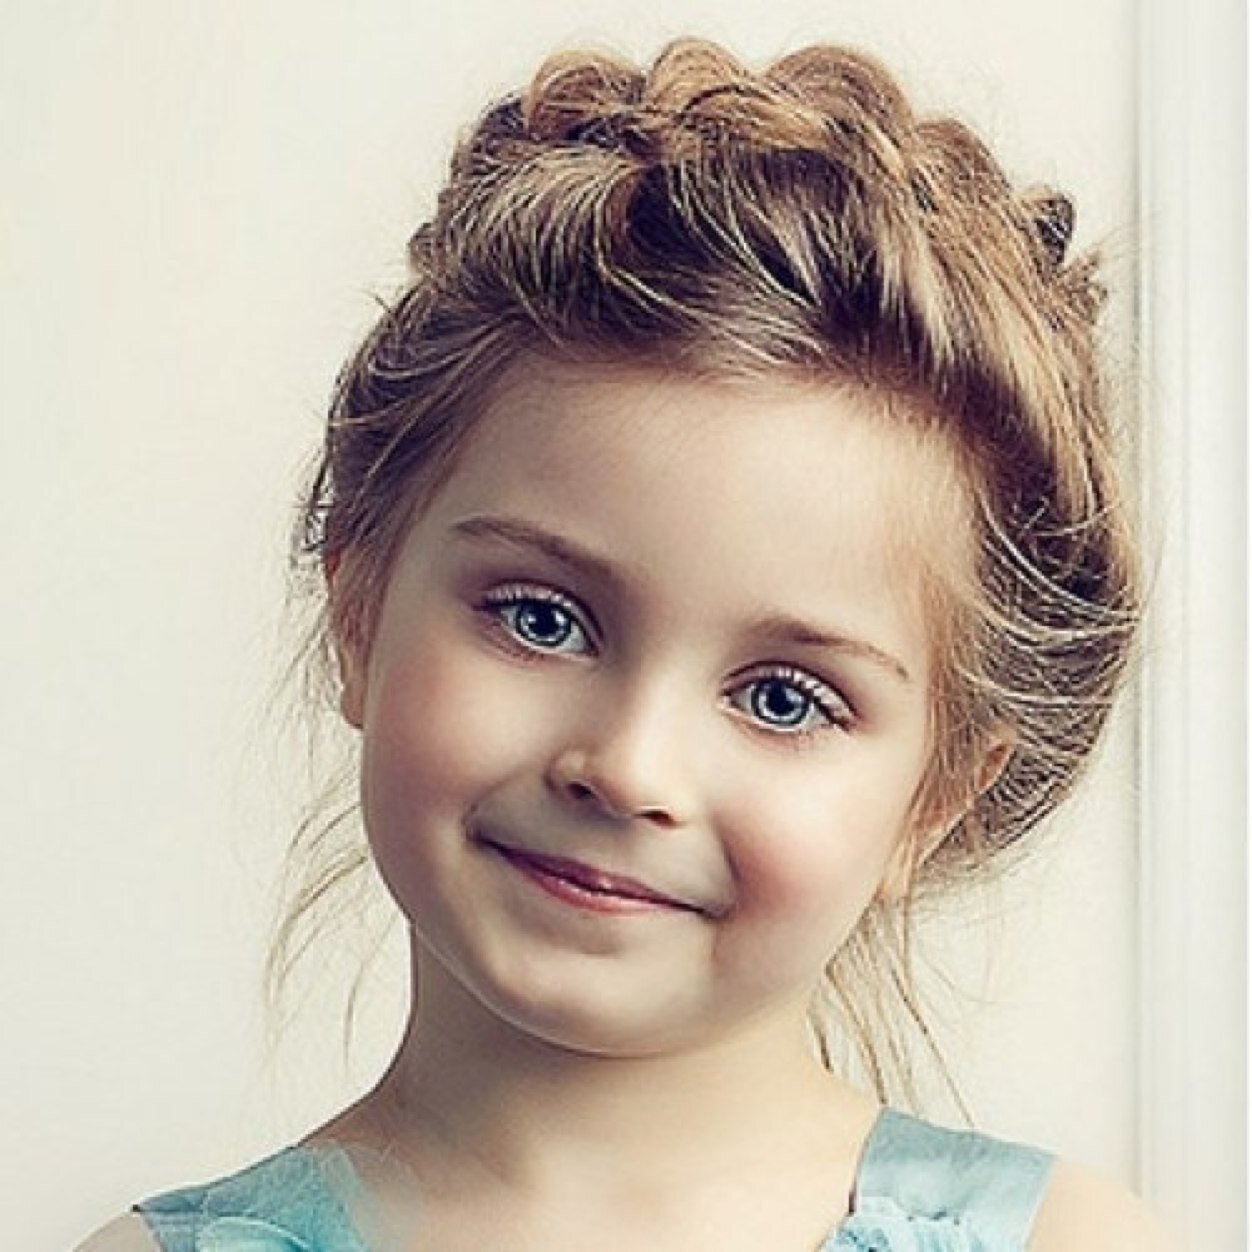 صورة طفلة جميلة , اجمل صور الاطفال عتاب وزعل